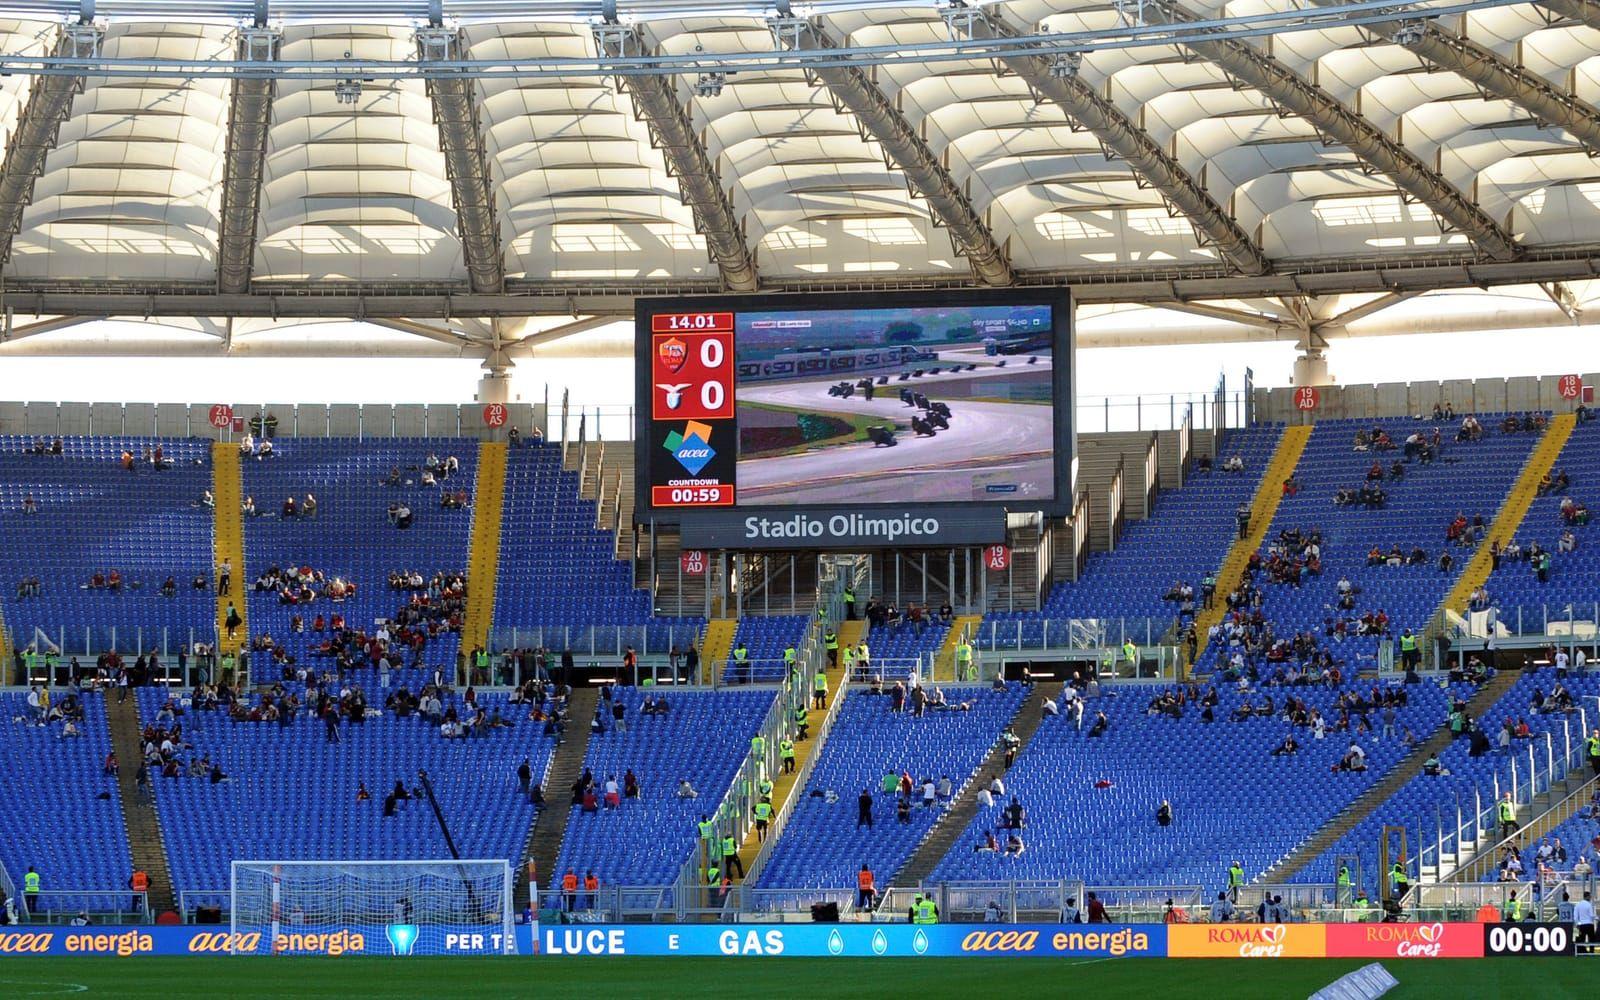 11. Stadio Olimpico där både Lazio och Roma spelar tar 72 698 åskådare.